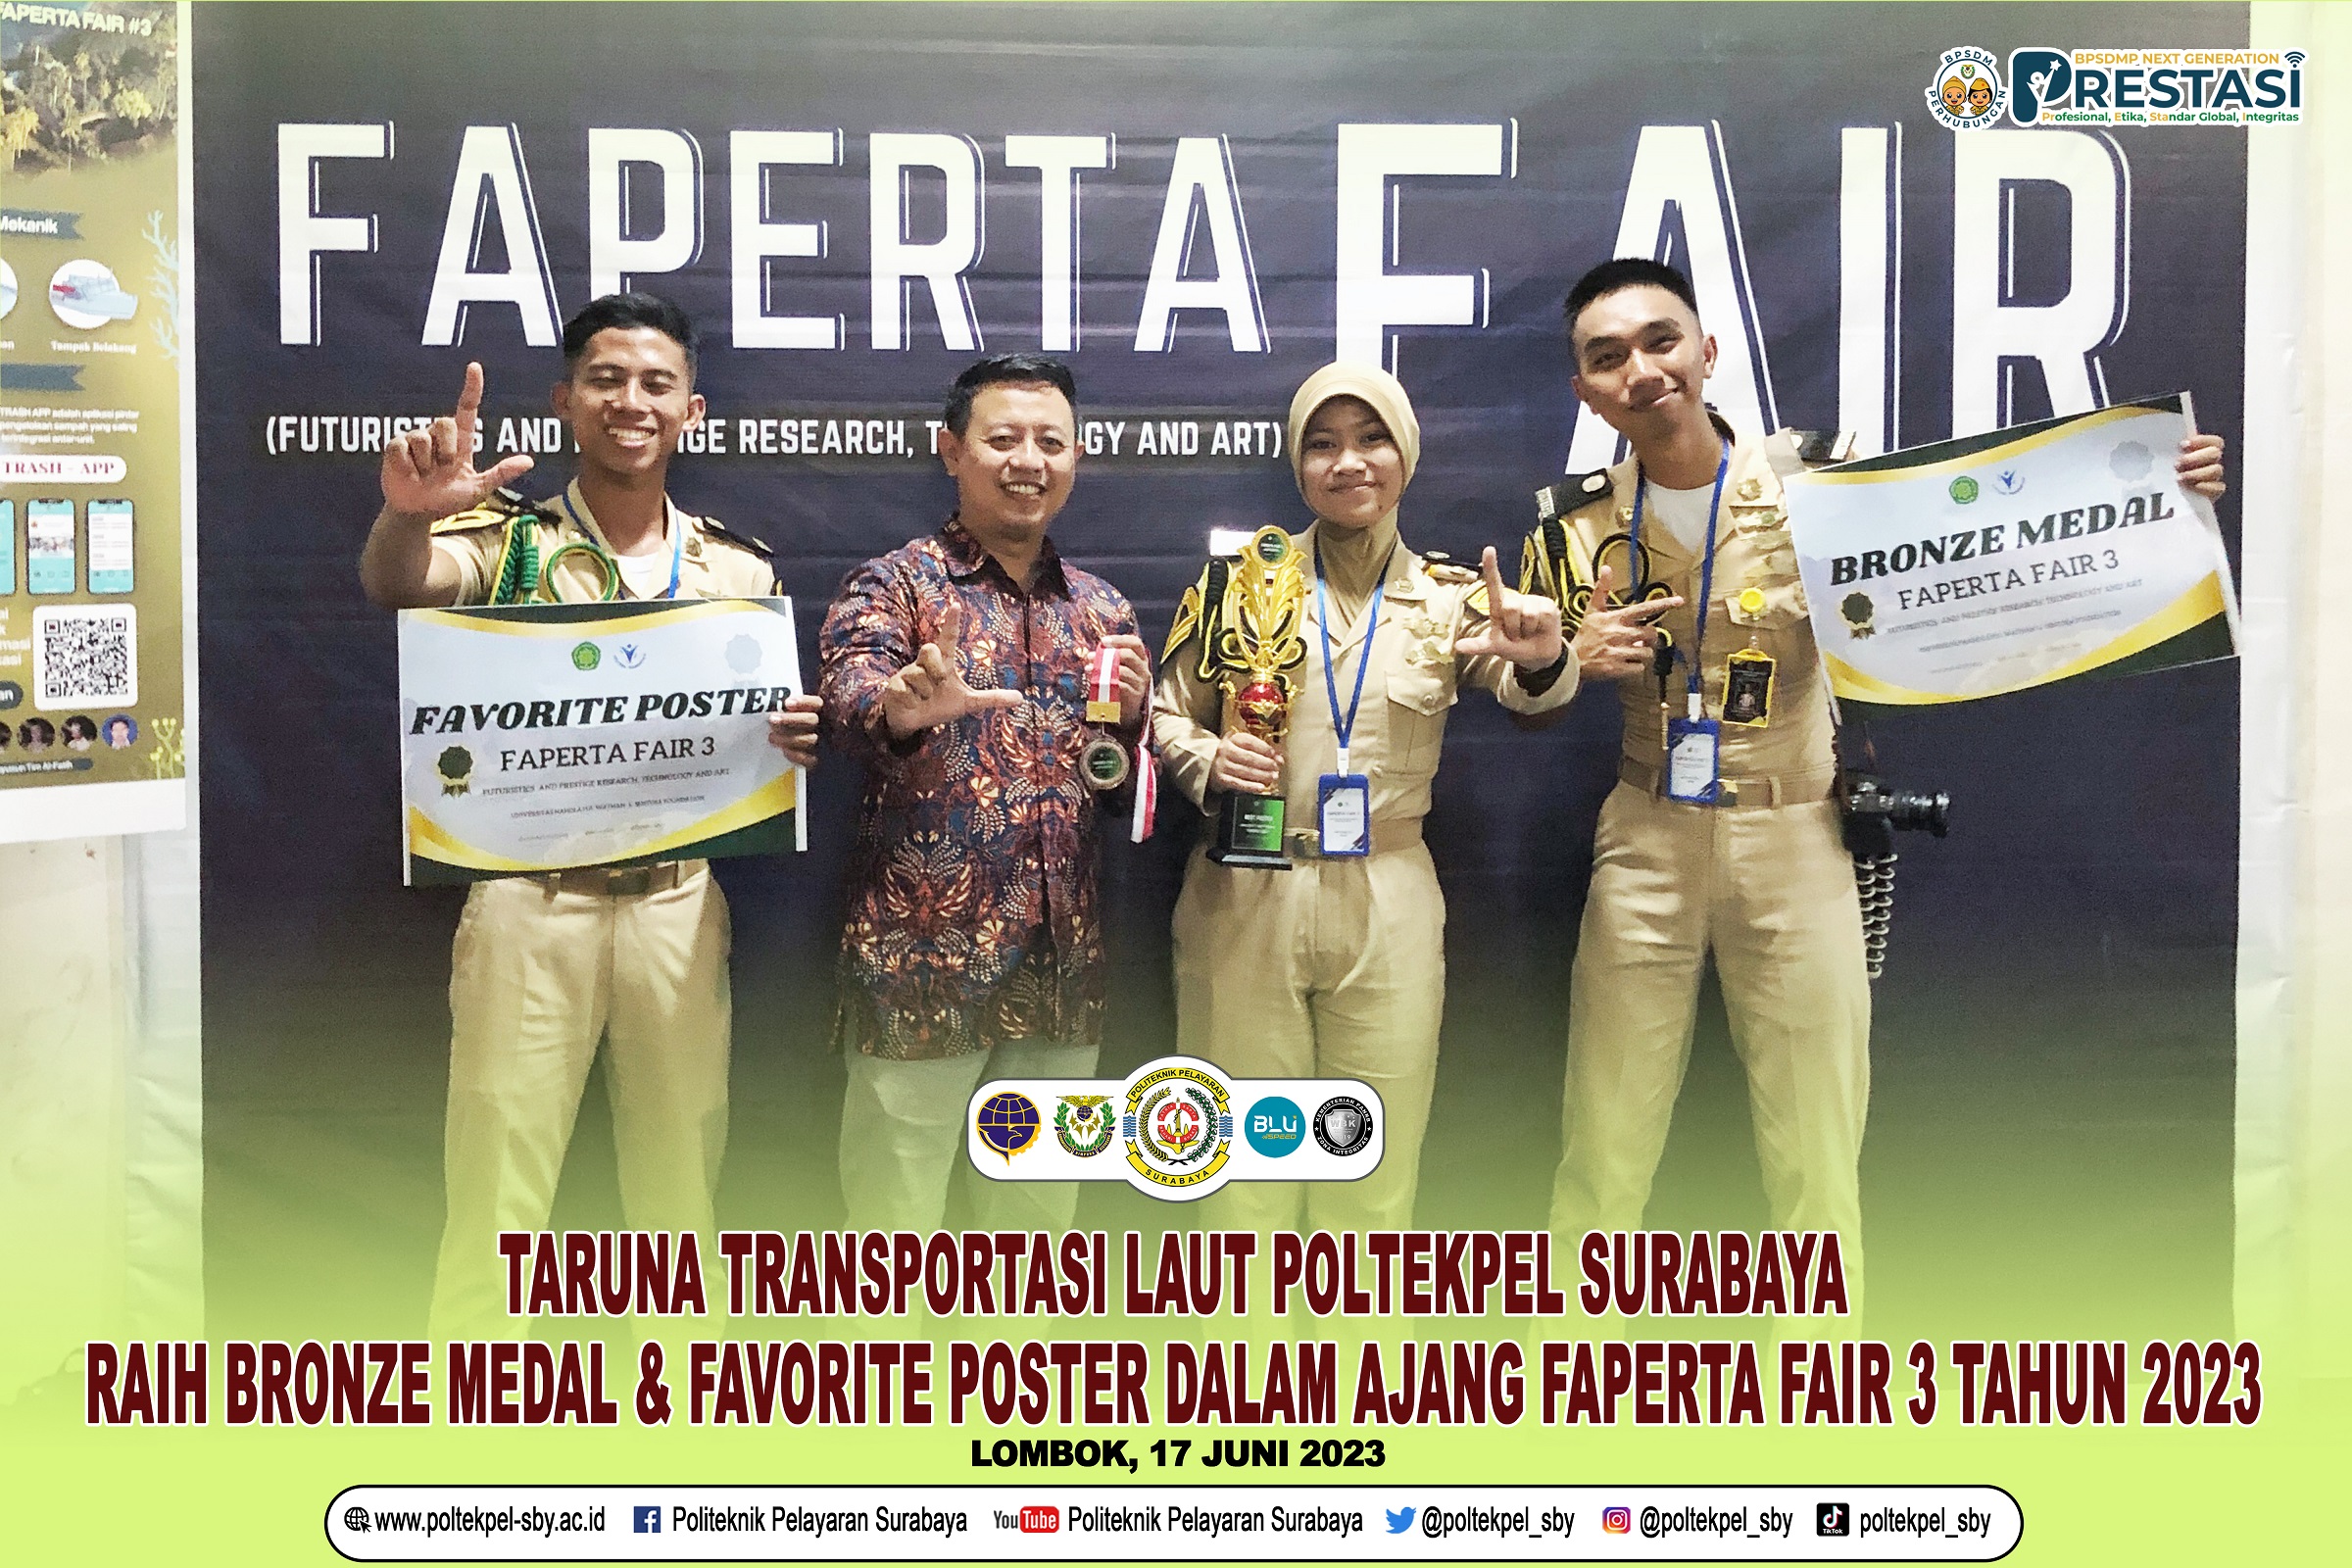 Taruna Transportasi Laut Poltekpel Surabaya Raih Medali Perunggu dan Poster Terfavorit di Ajang FAPERTA FAIR 3